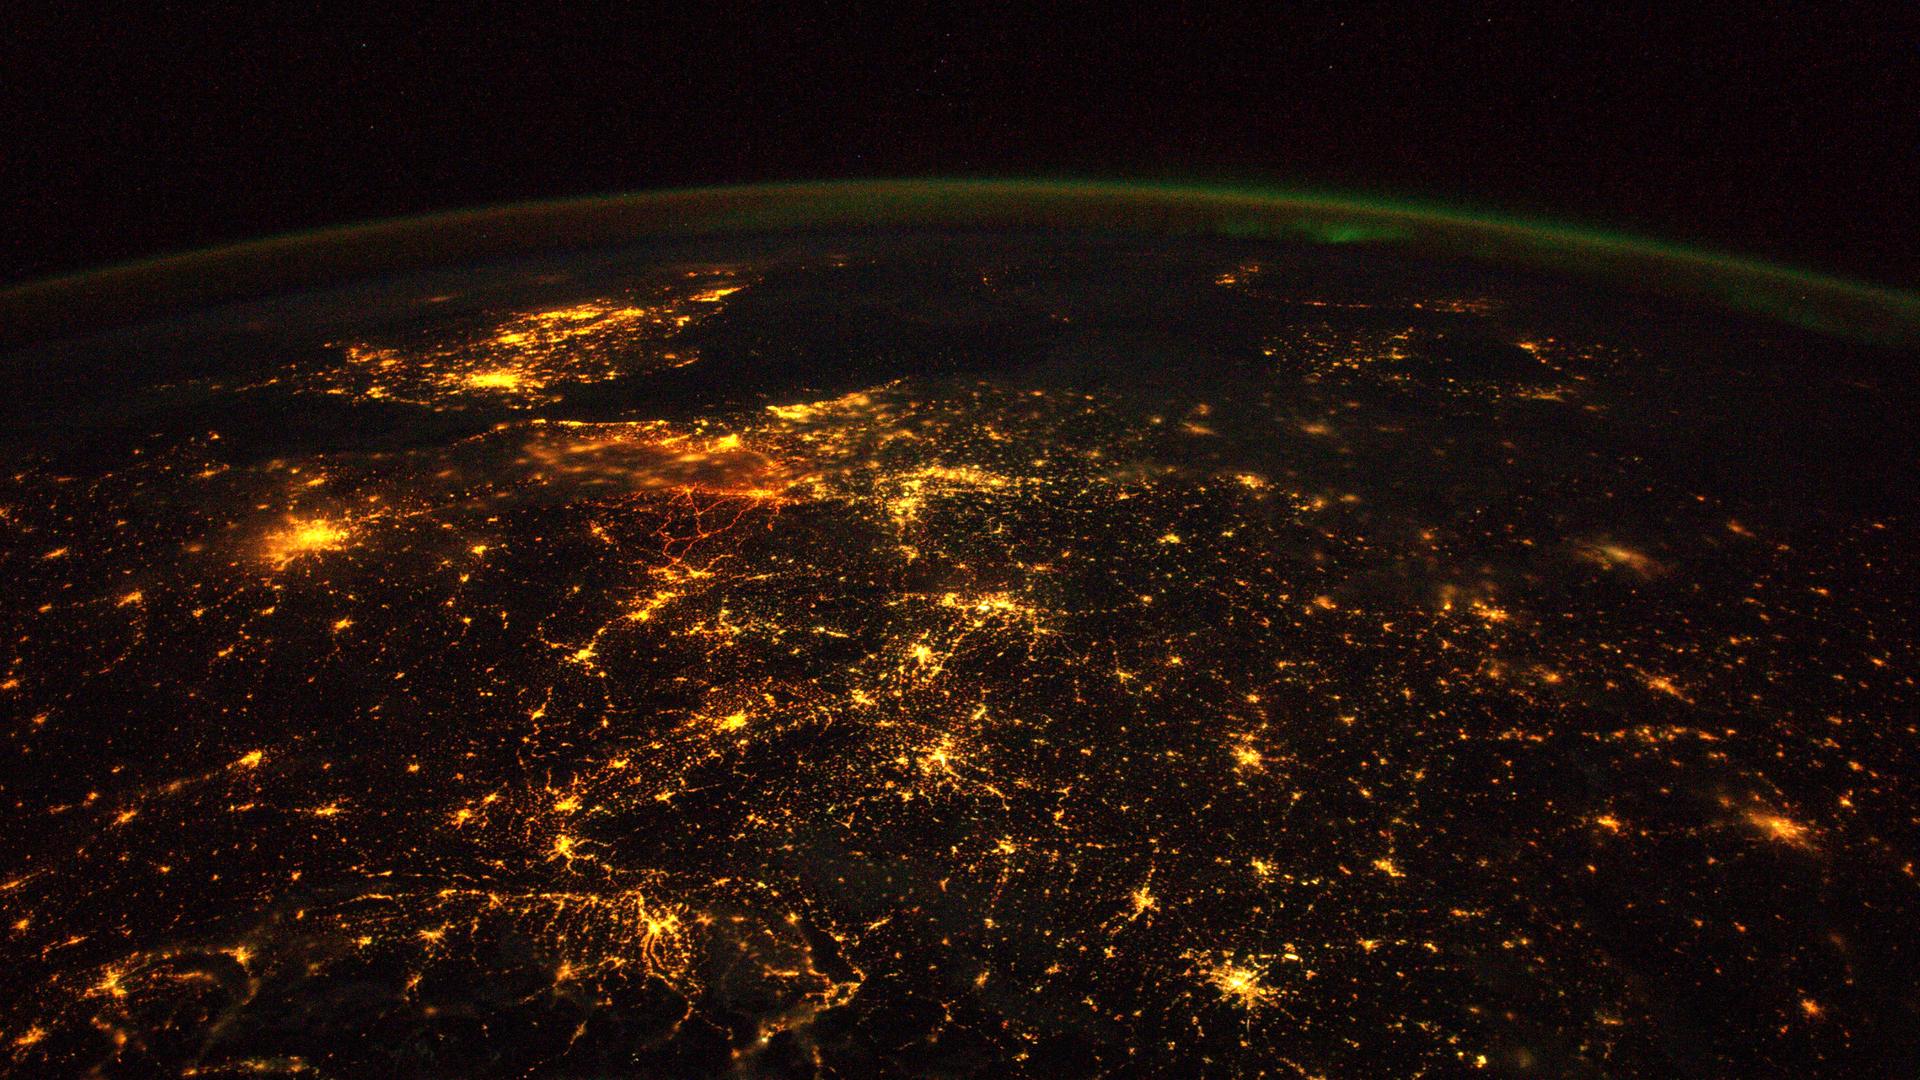 Europa – hier aufgenommen von Alexander Gerst von der ISS – ist nachts viel zu hell erleuchtet (links oben ist England zu erkennen)